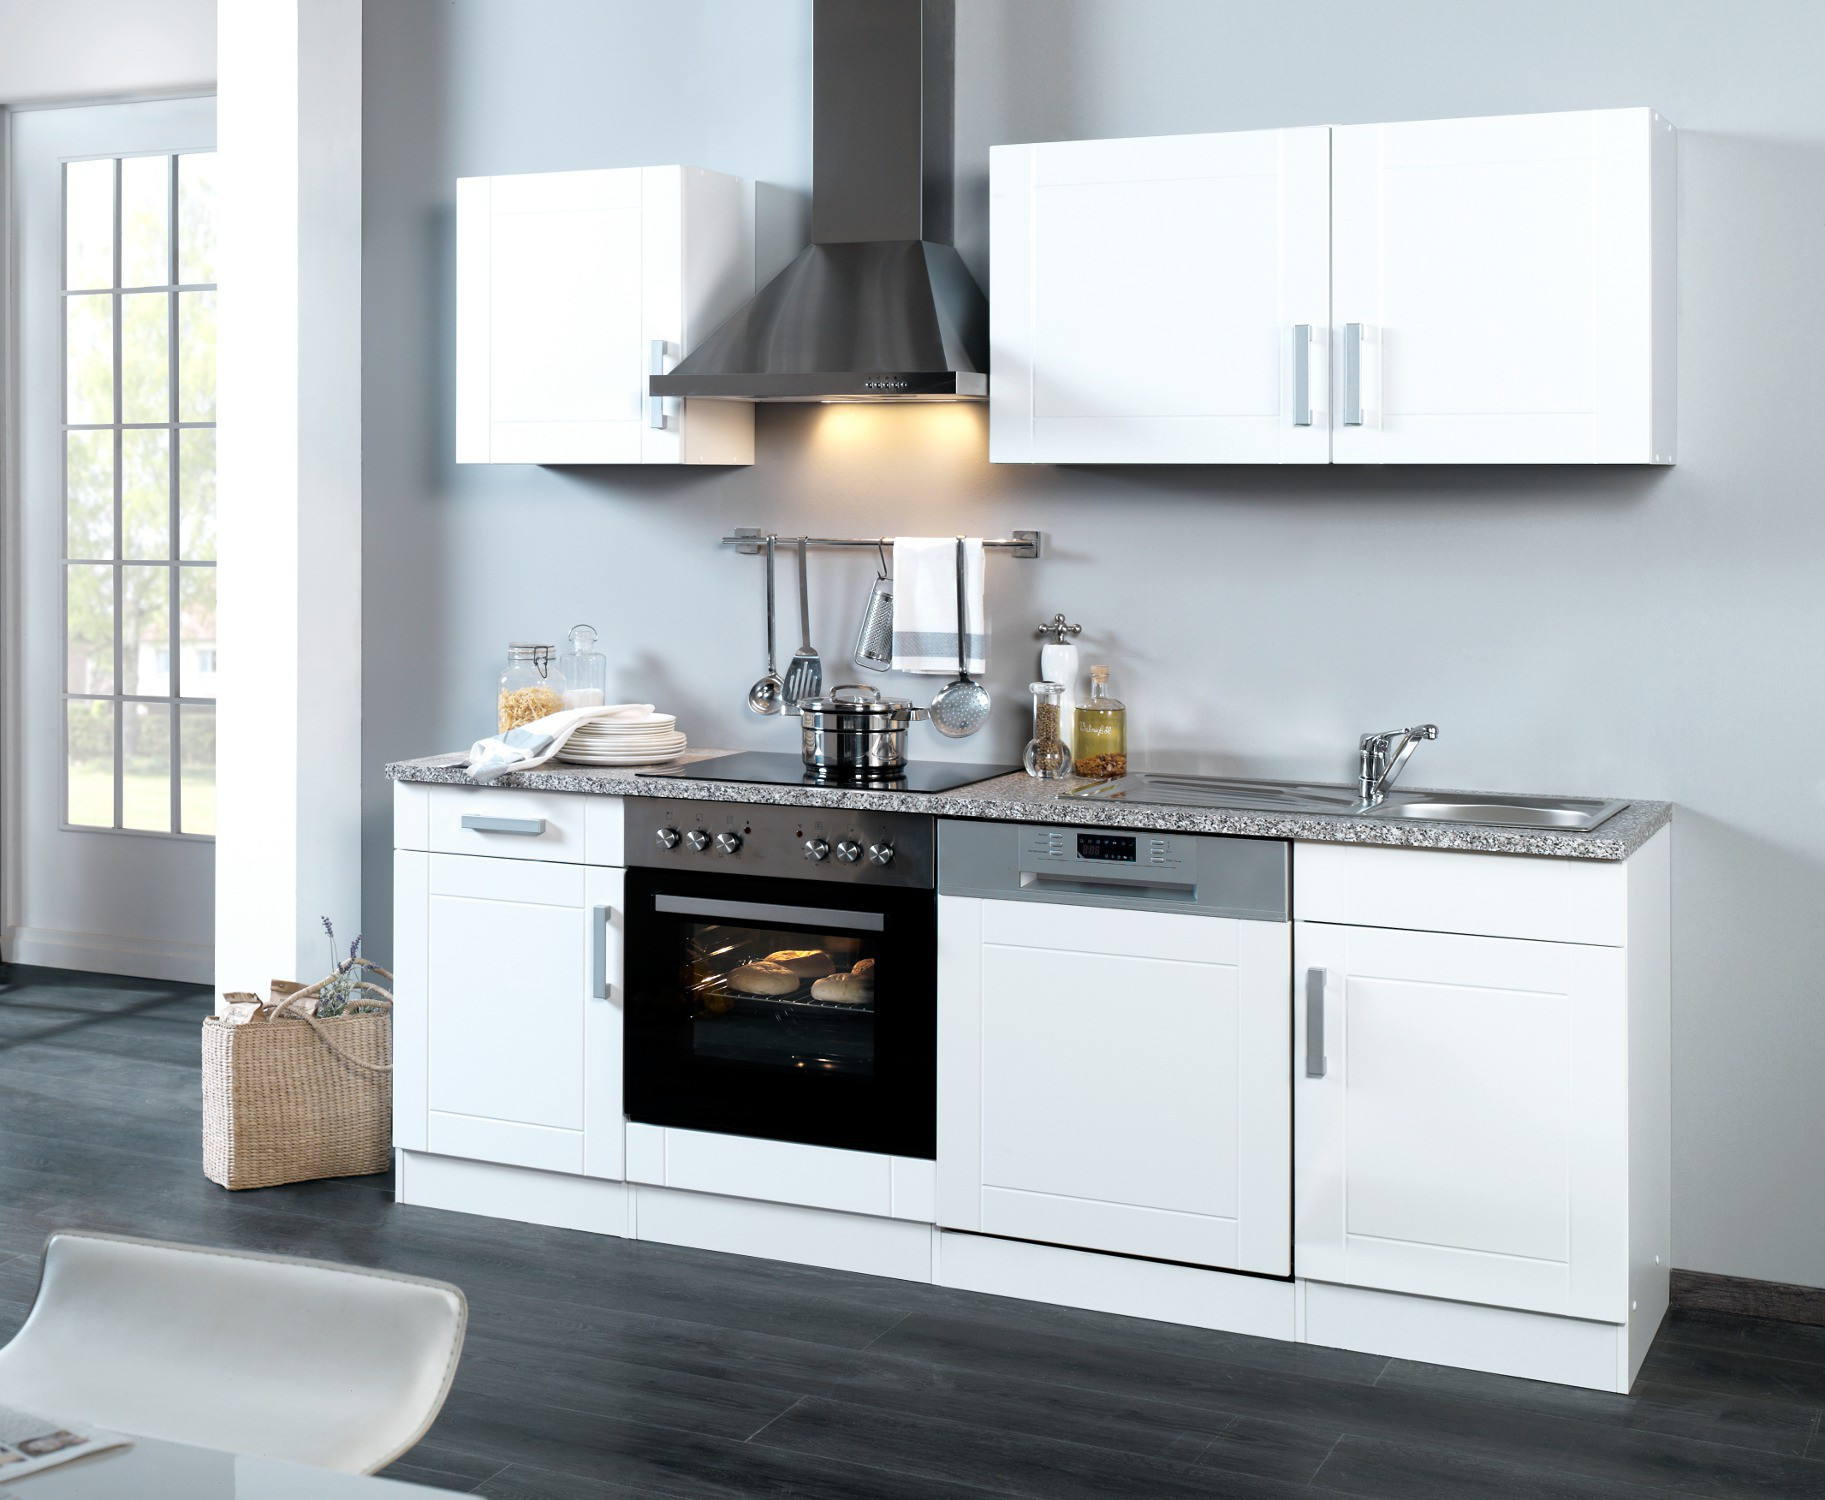 Küche Mit E Geräten
 Küchenzeile VAREL Küche mit E Geräten Breite 220 cm